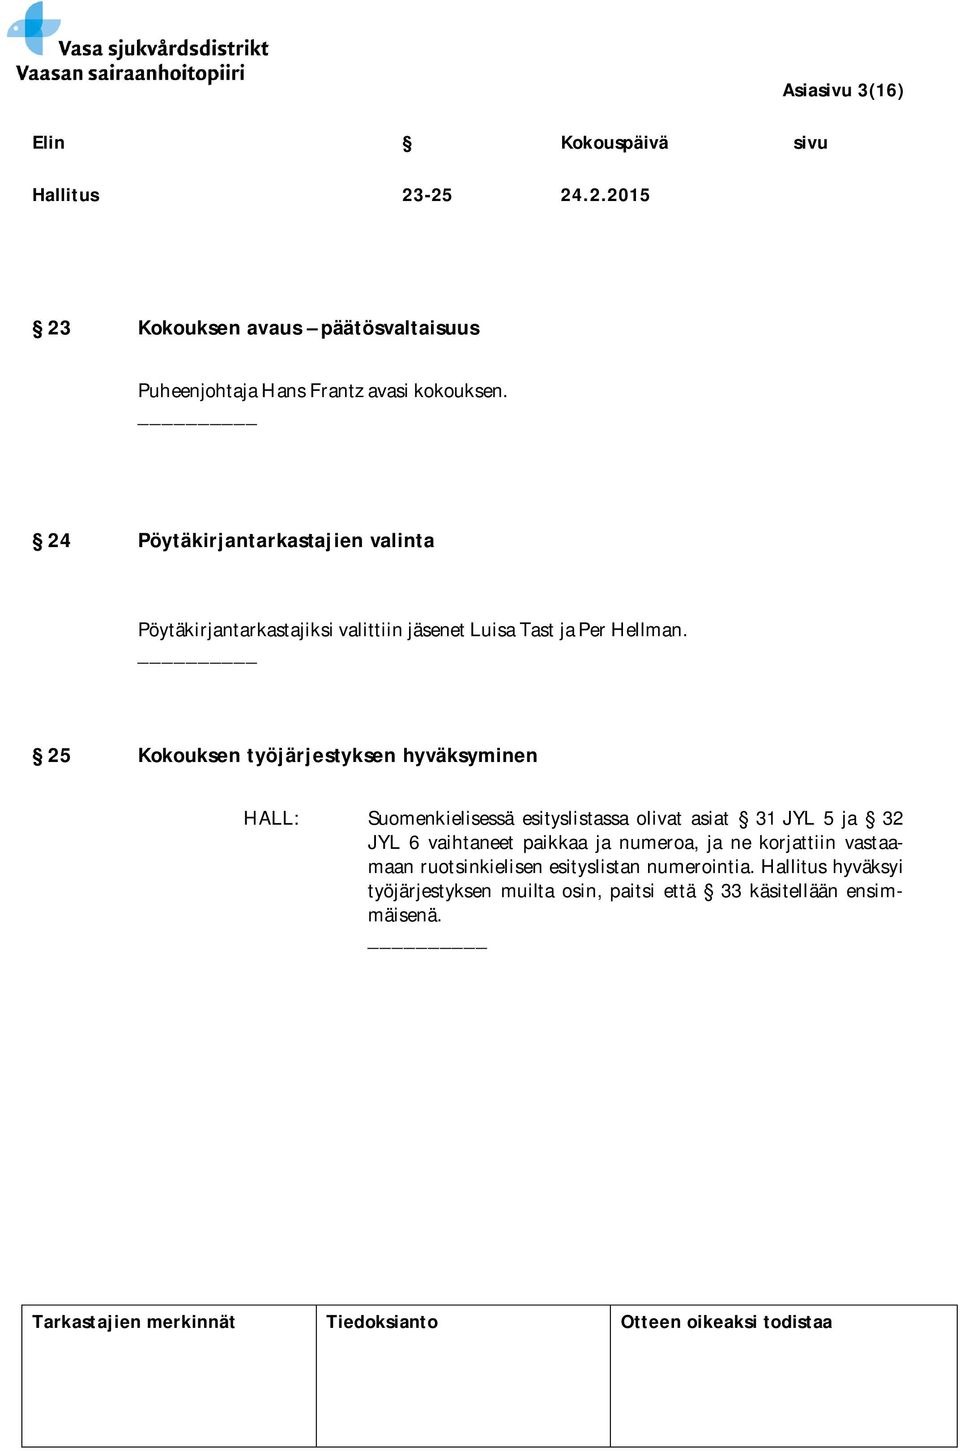 25 Kokouksen työjärjestyksen hyväksyminen HALL: Suomenkielisessä esityslistassa olivat asiat 31 JYL 5 ja 32 JYL 6 vaihtaneet